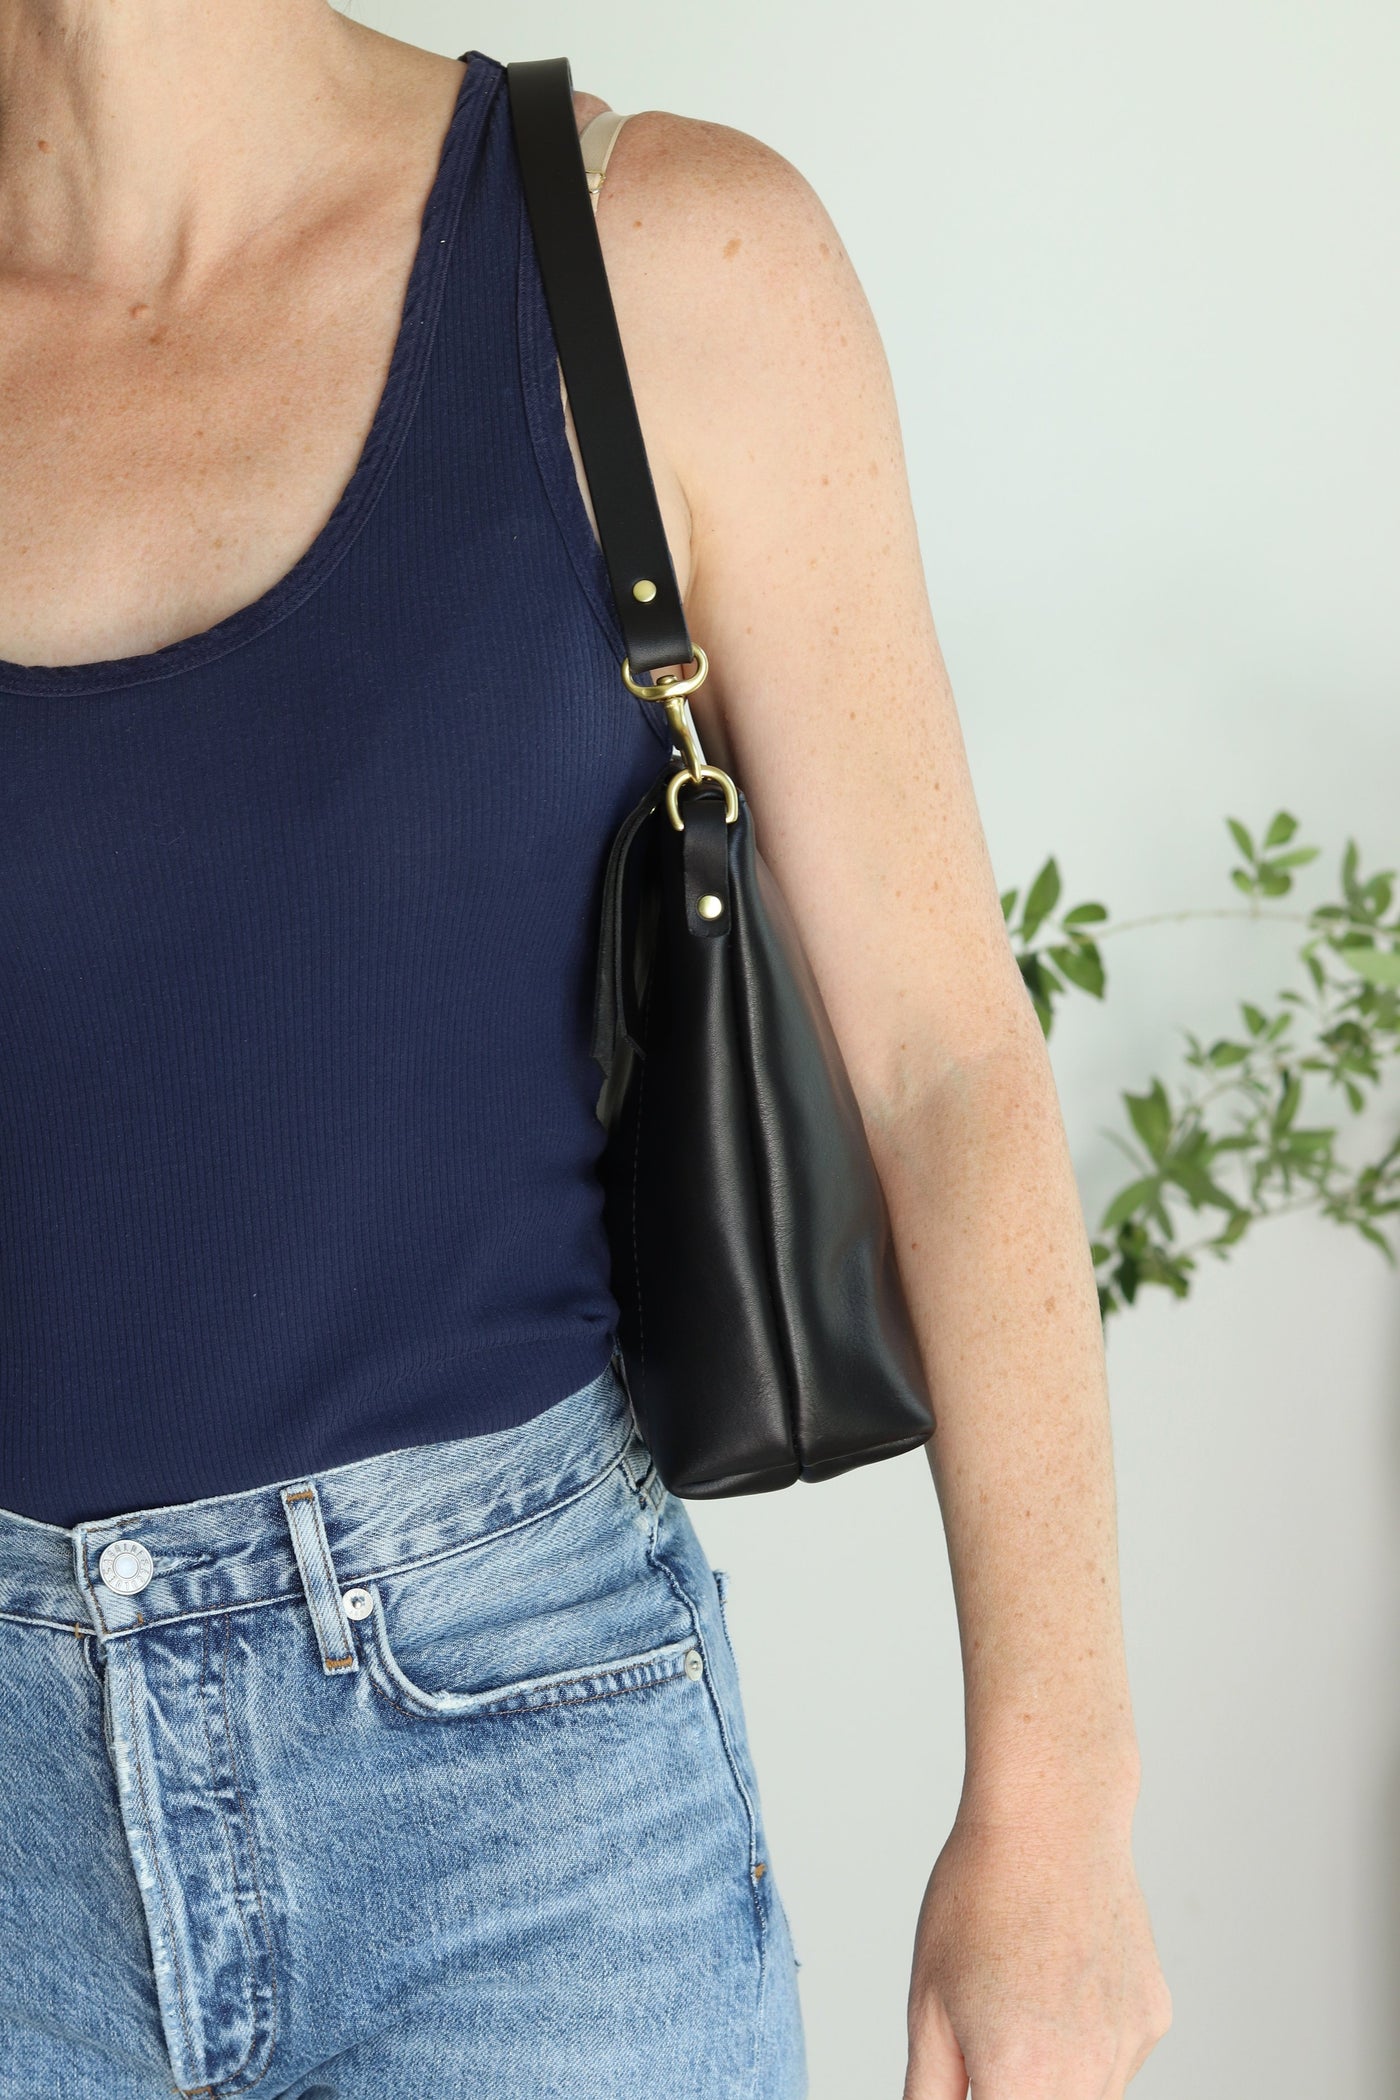 Removable Short Leather Shoulder Strap for Your Handbag – Juliette